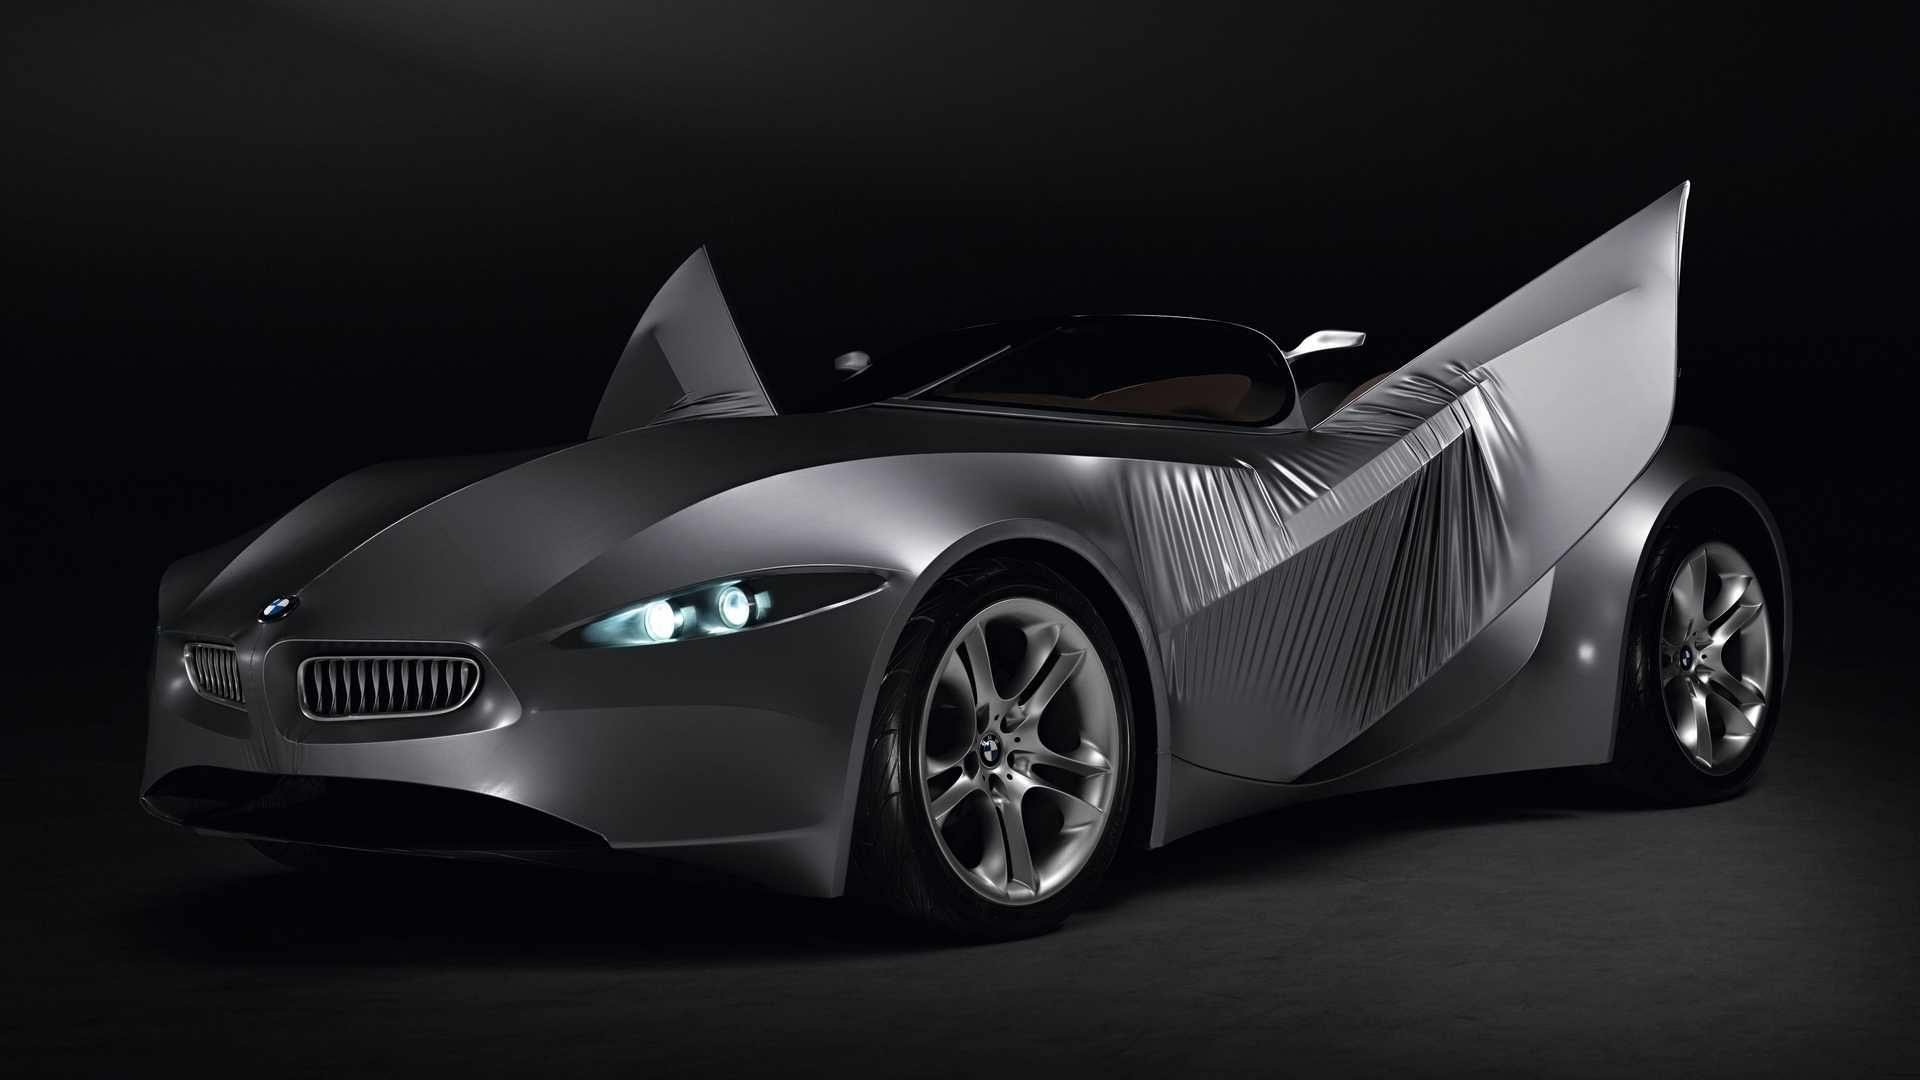 مرجع متخصصين ايران نماي خودروي مفهومي روباز بي ام و گينا / BMW GINA concept convertible با درهاي پارچه اي